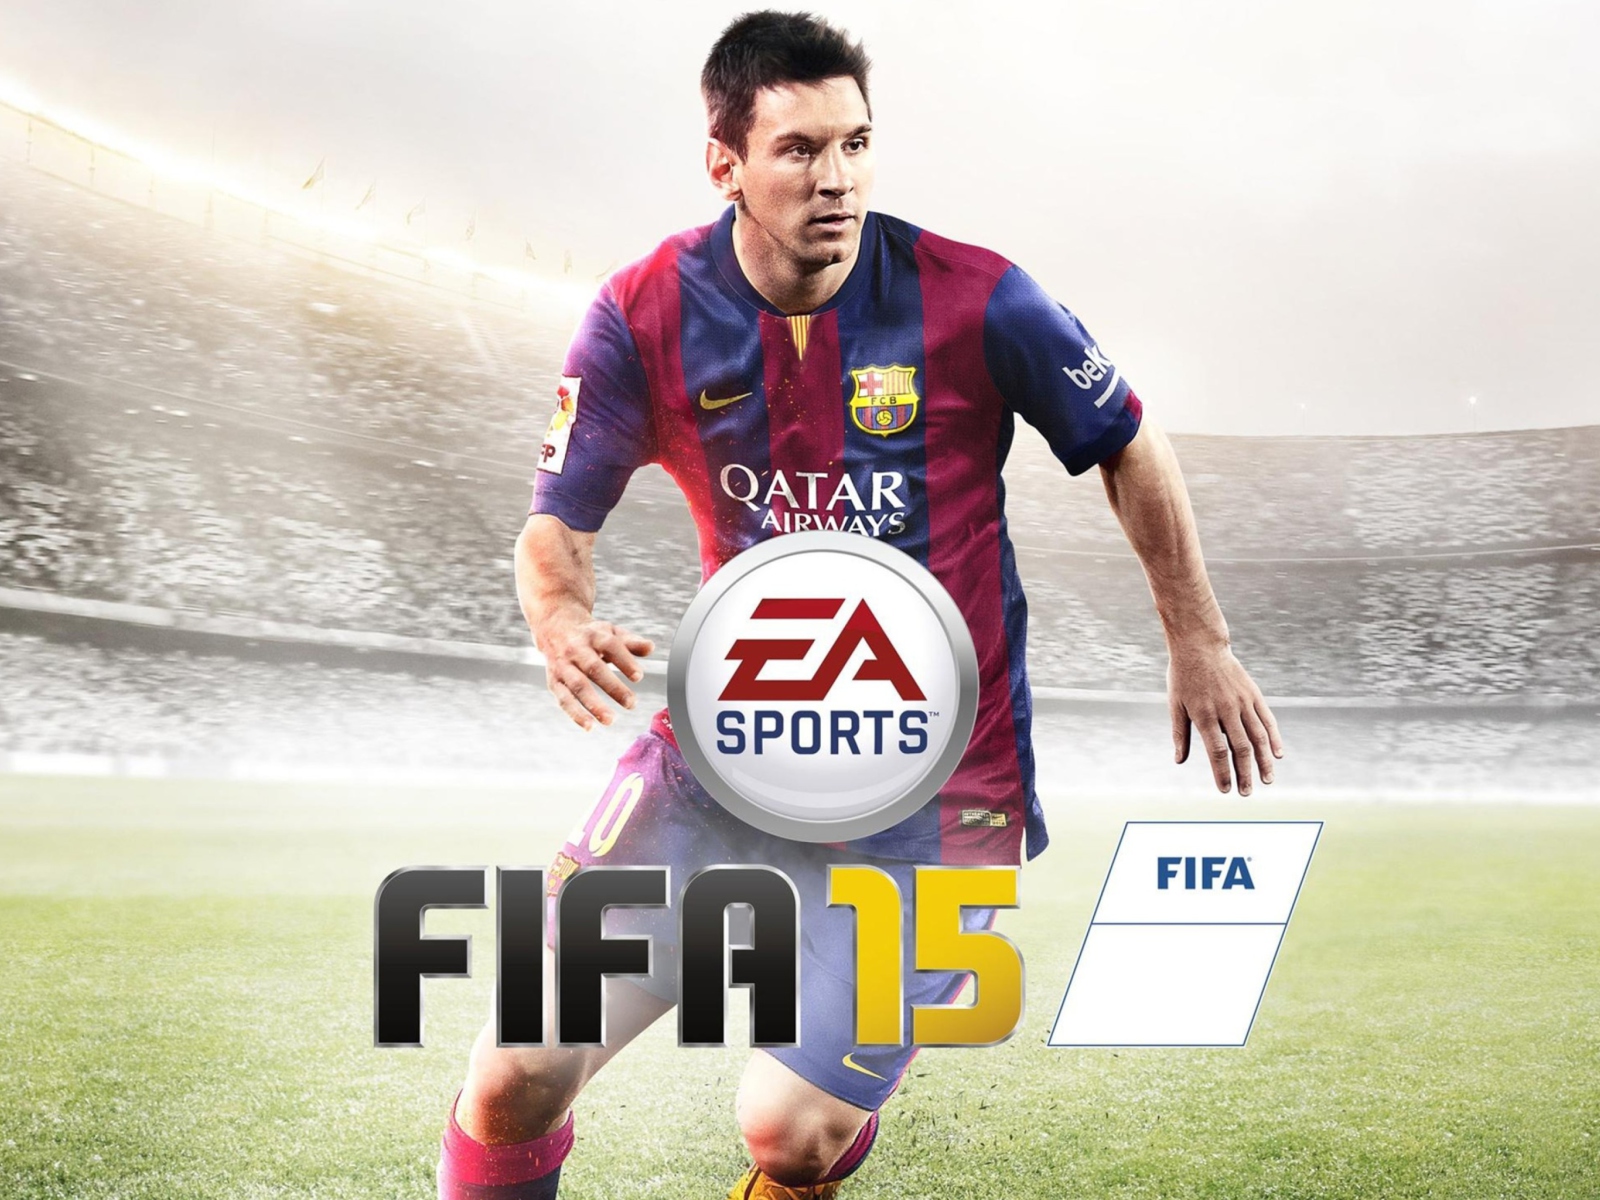 FIFA 15: Messi wallpaper 1600x1200